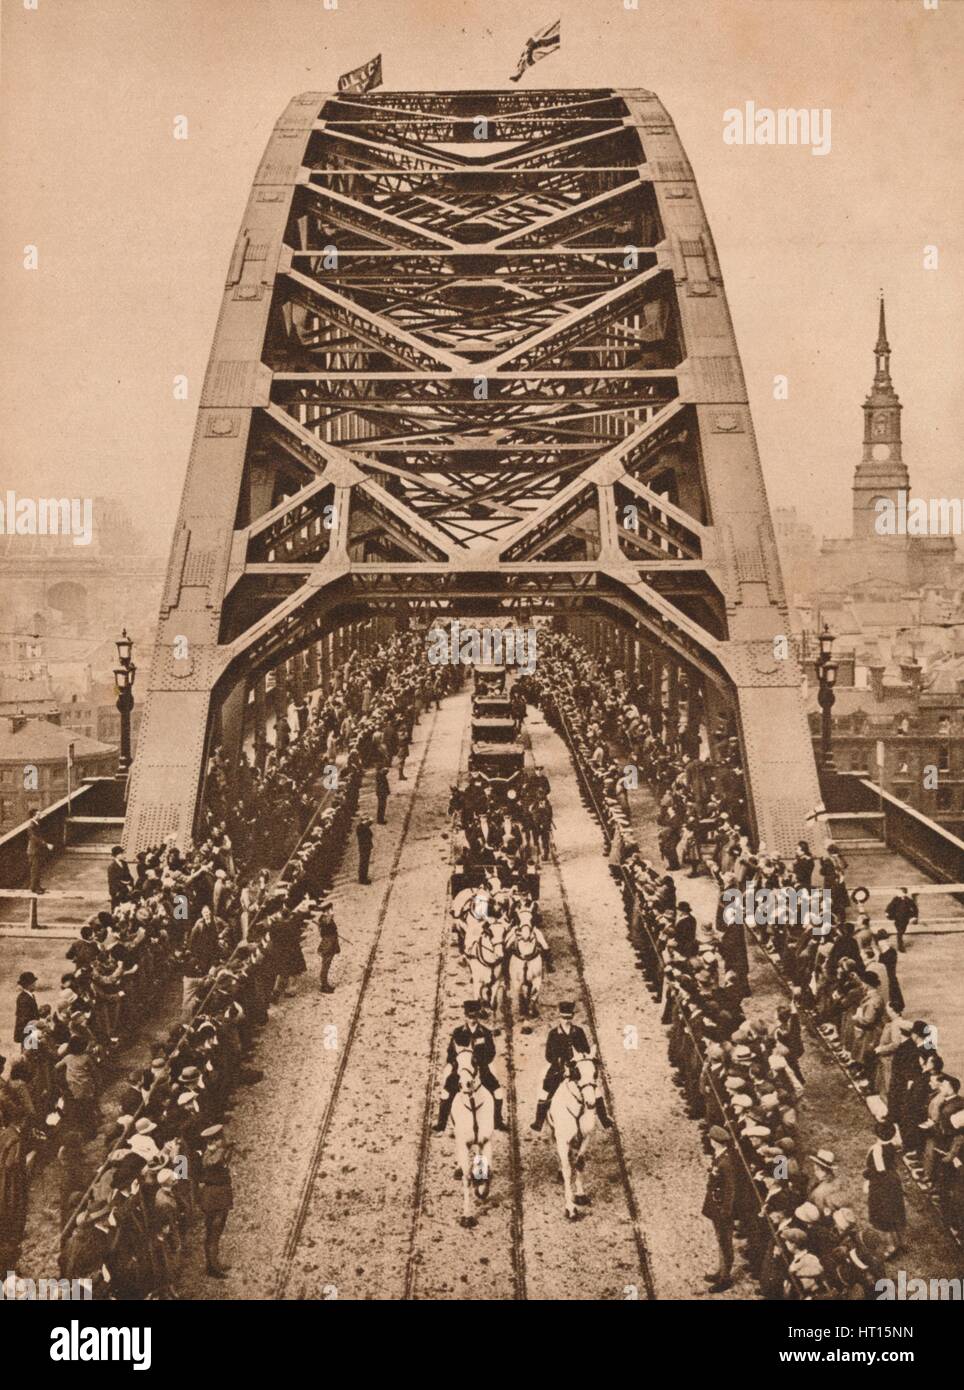 Eröffnung des neuen Tyne Bridge von König George V, Newcastle-upon-Tyne, 10. Oktober 1928 (1935). Künstler: unbekannt. Stockfoto